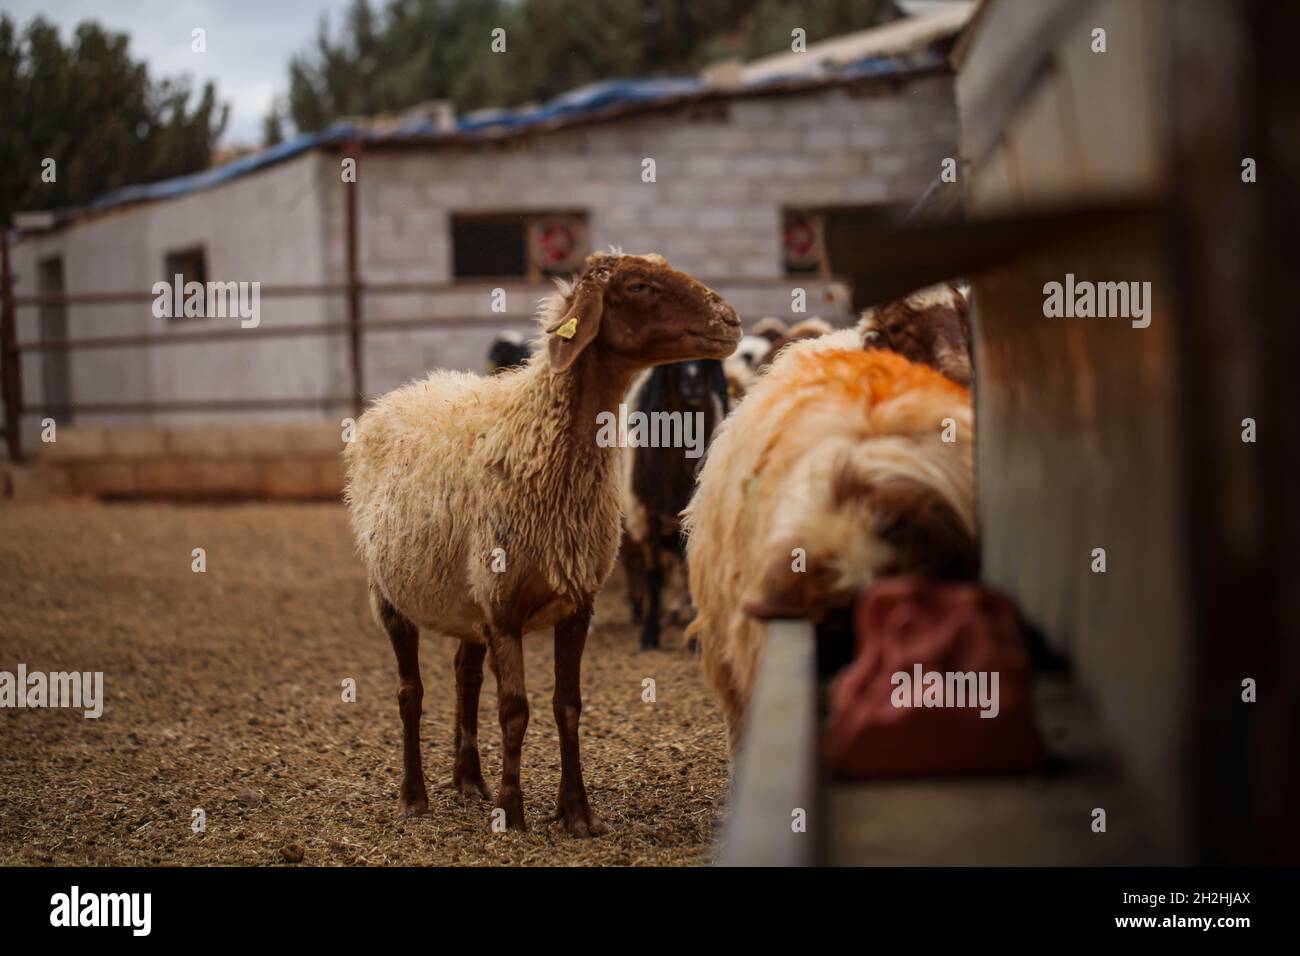 17 octobre 2021, Gaziantep, Anatolie, Turquie : Gaziantep,Turquie.19 octobre 2021.Moutons dans les fermes œGrand dans la ville de Gaziantep, dans le sud de la Turquie.La ferme reproduit des chèvres, des moutons et des poulets, et produit un grand nombre d'oeufs à aire libre.La ferme, qui cultive également des champignons et produit des fourrages pour animaux, s'engage à protéger l'environnement et à assurer la durabilité.L'entreprise est un exemple d'intégration réussie des Syriens qui s'installent en Turquie après avoir fui le conflit dans leur pays d'origine (Credit image: © Zakariya Yahya/IMAGESLIVE via ZUMA Press Wire) Banque D'Images